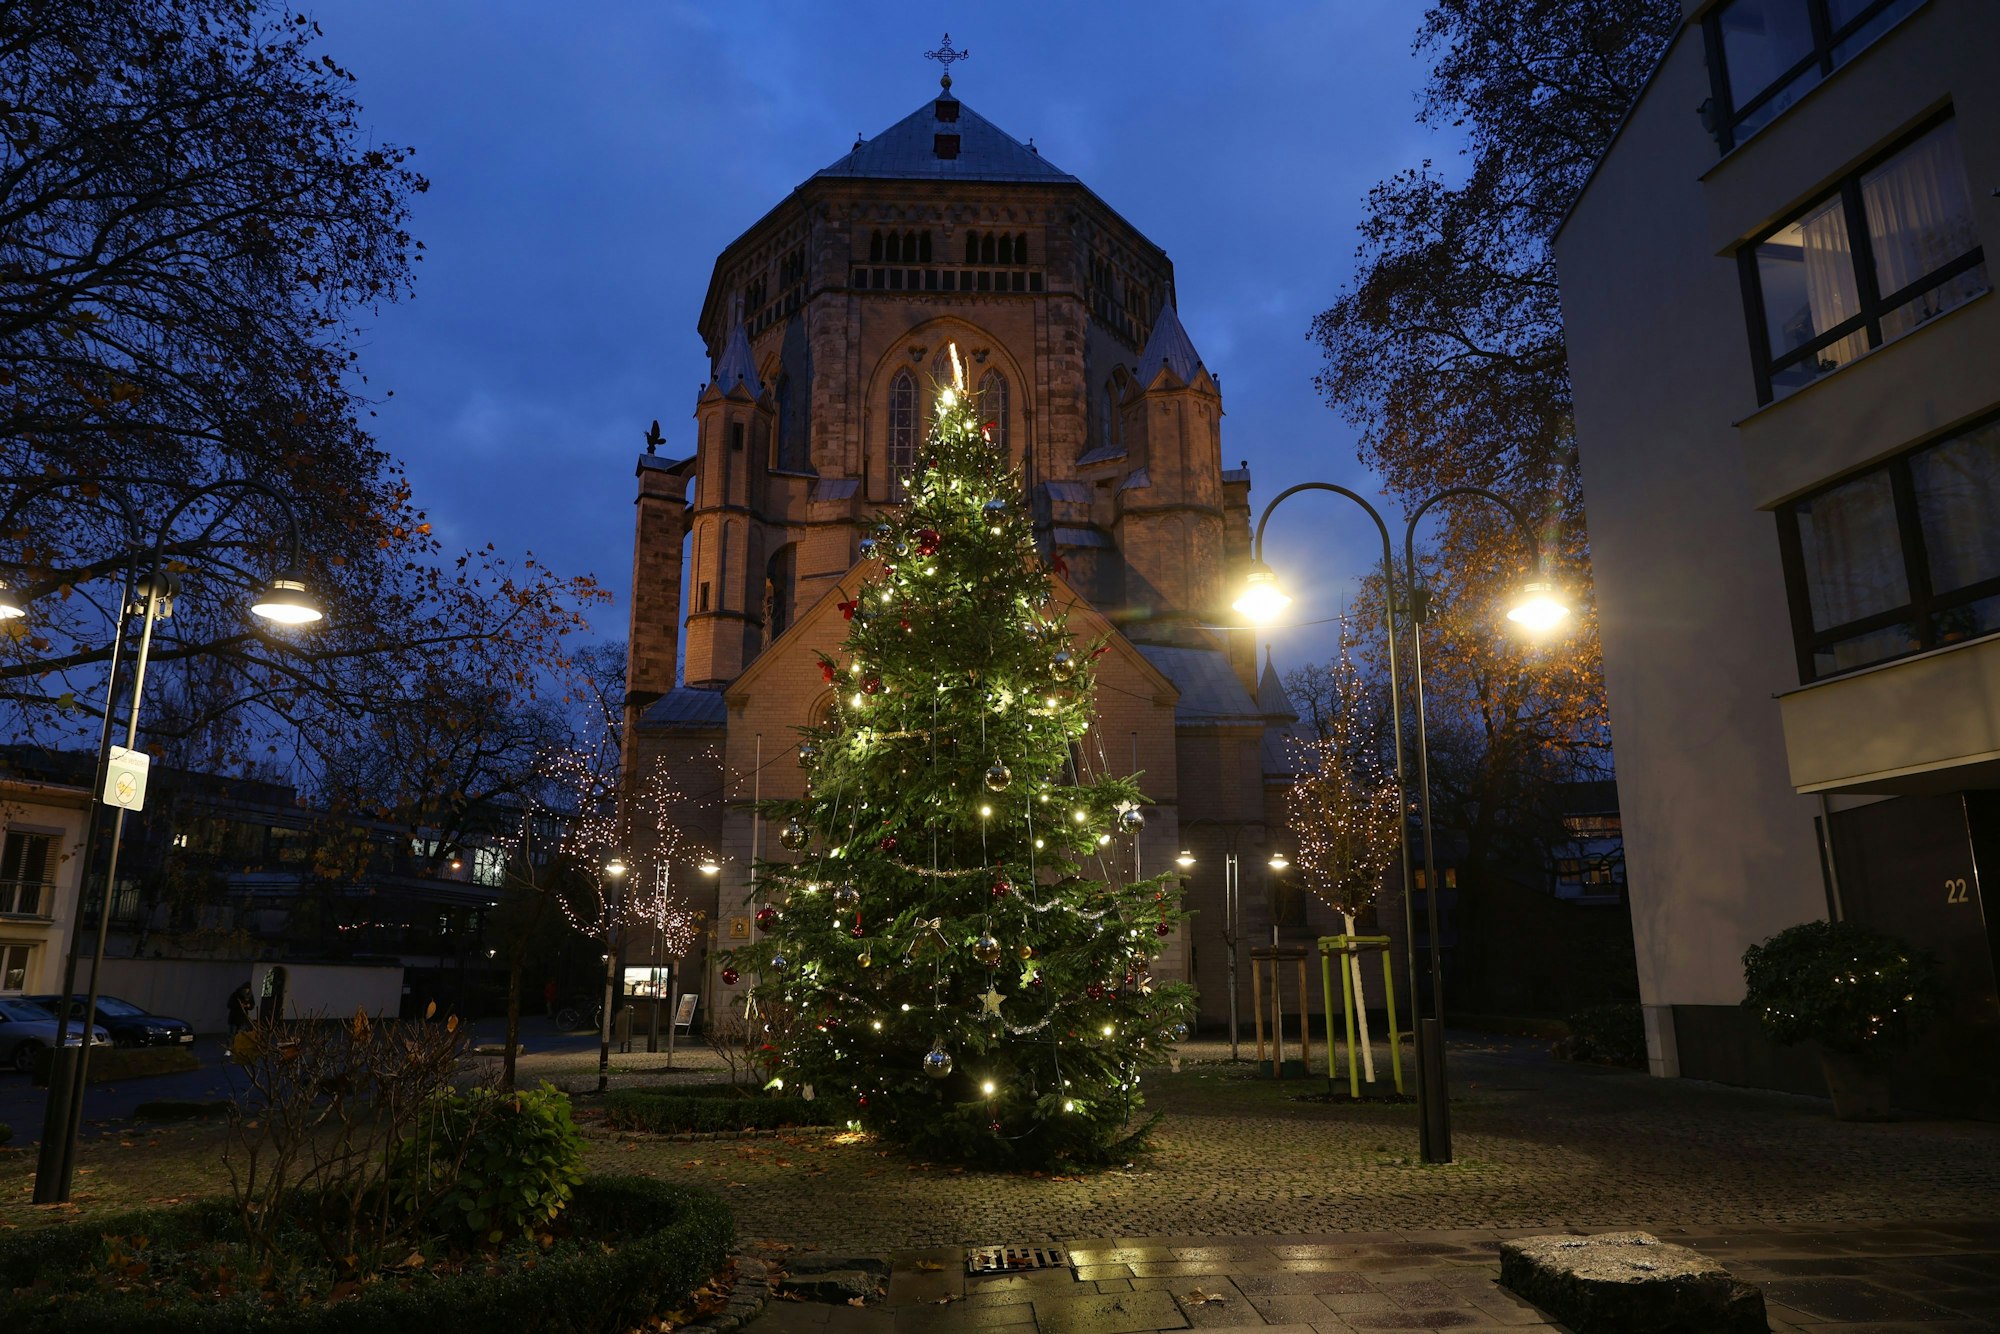 Ein Weihnachtsbaum steht vor der Kirche Sankt Gereon. Er ist mit Weihnachtskugeln und Lichterketten geschmückt. Der Himmel ist dunkelblau.